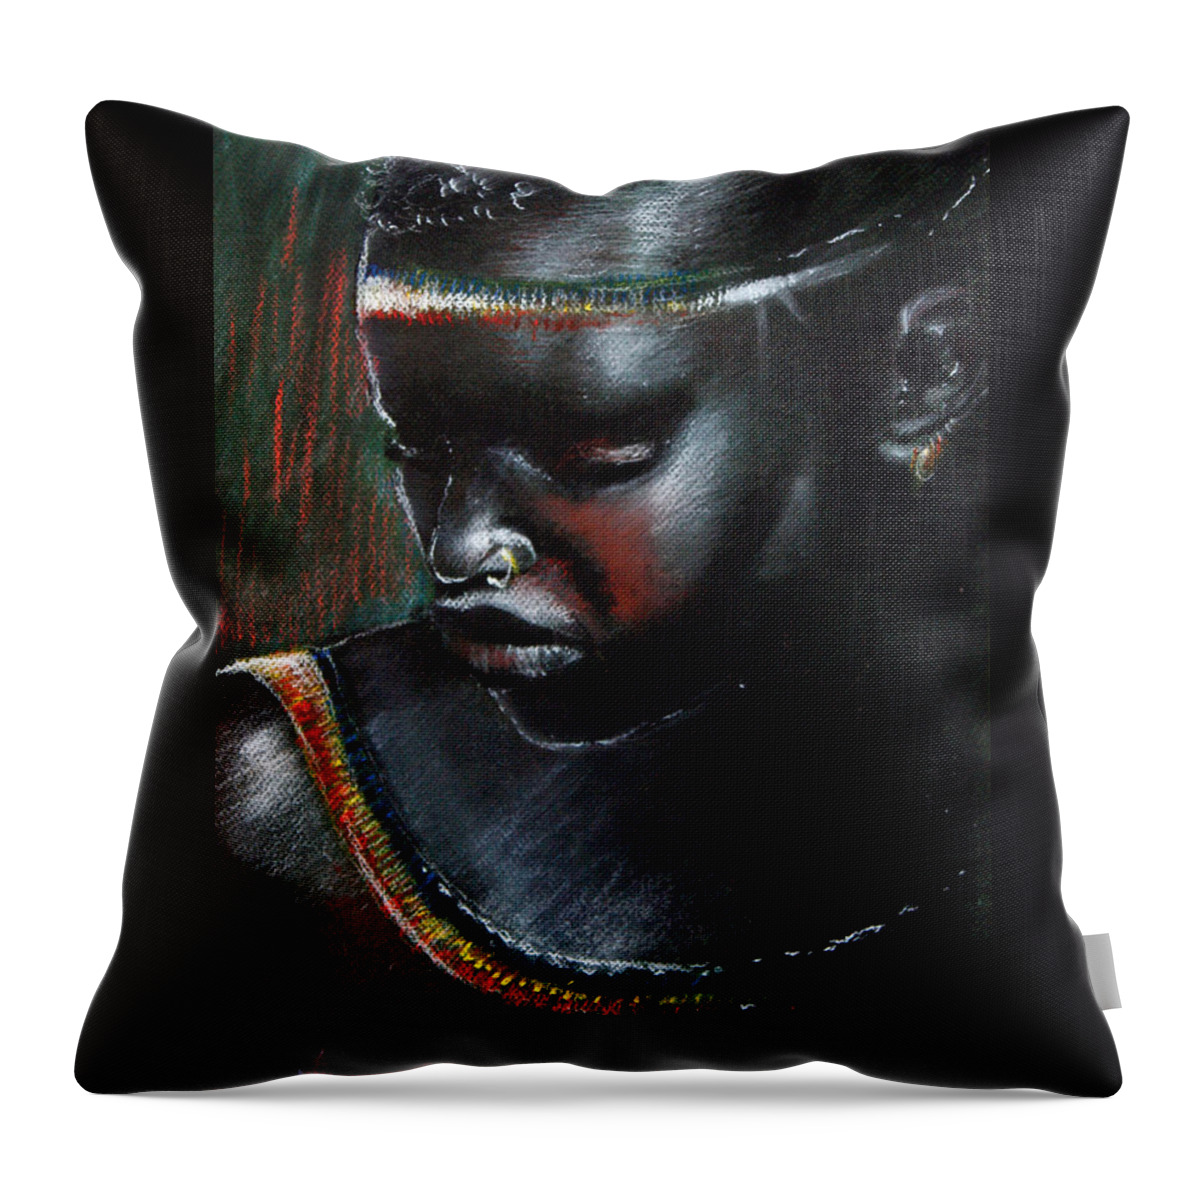 Portrait Throw Pillow featuring the pastel Kenya beauty by Bernadett Bagyinka